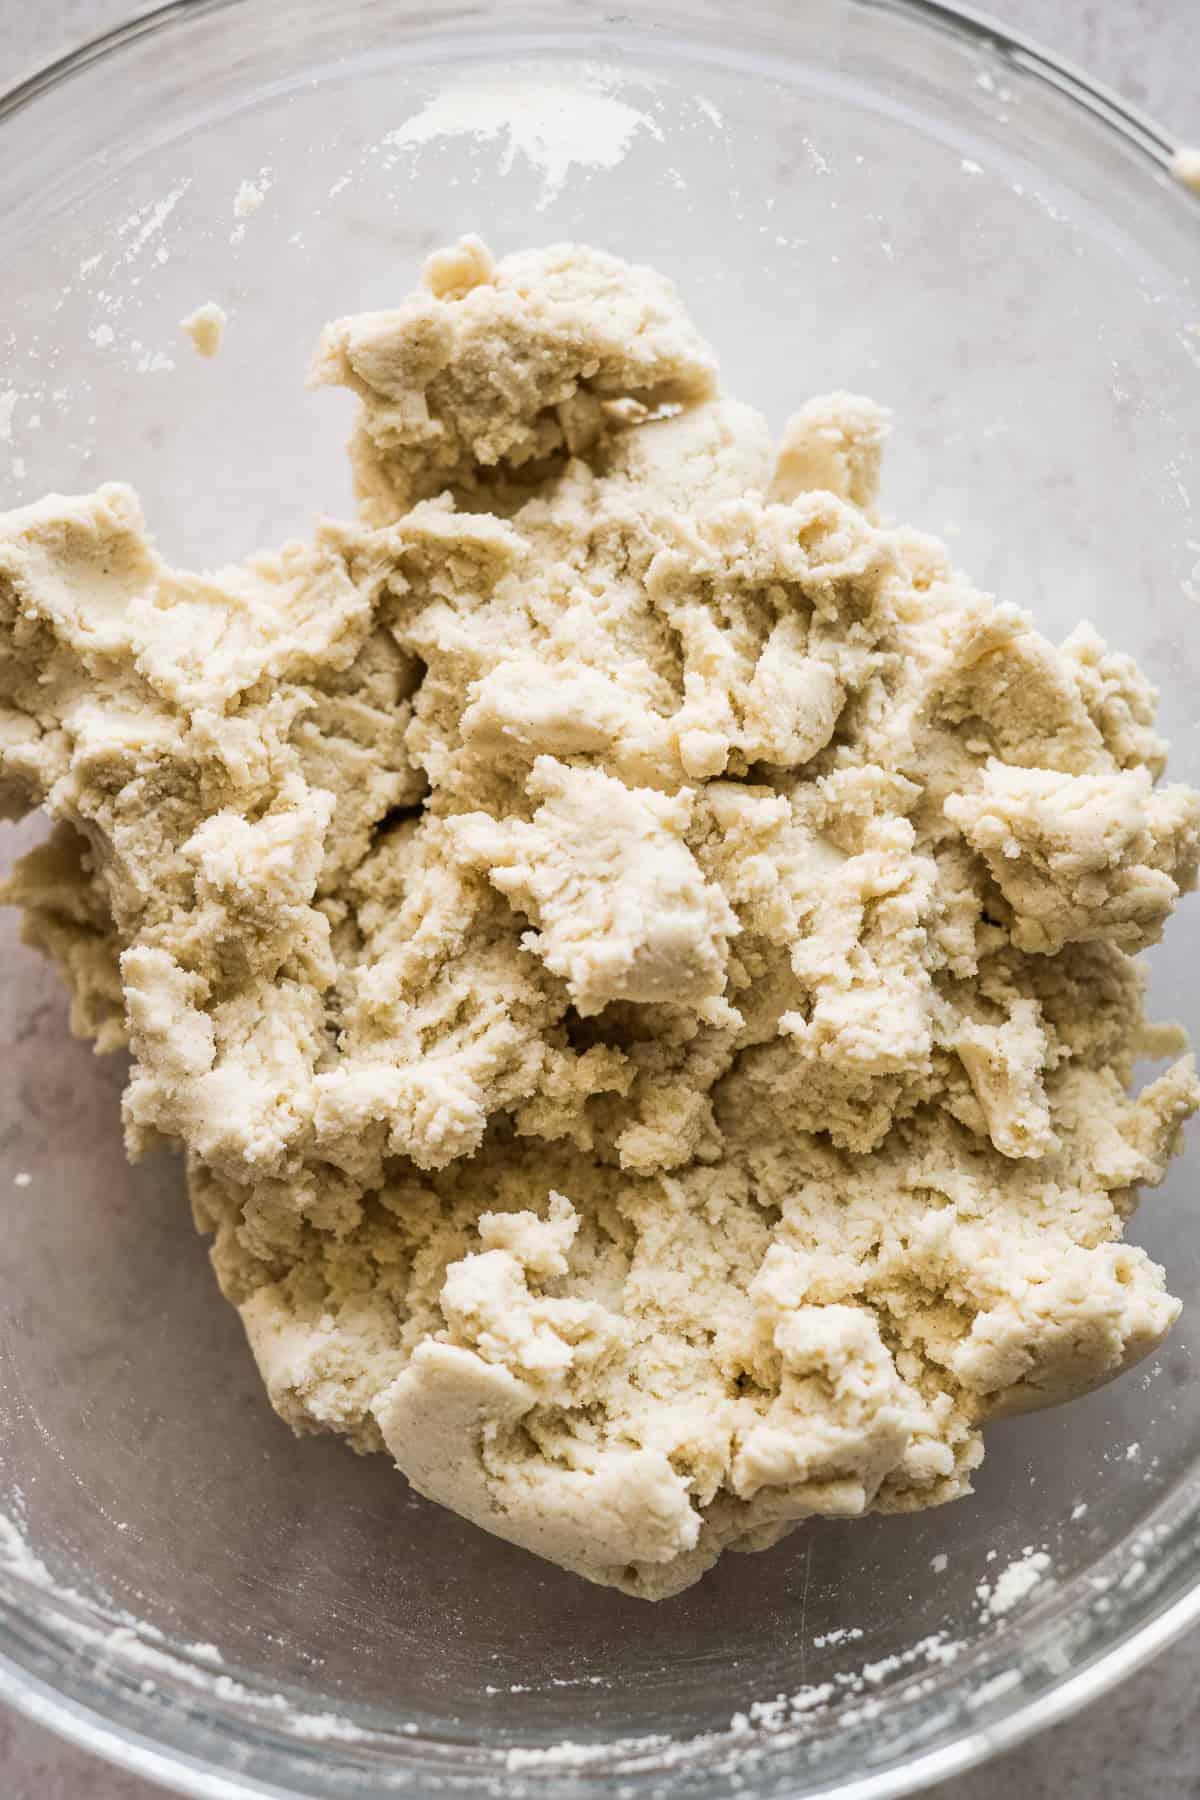 Masa harina dough in a bowl.